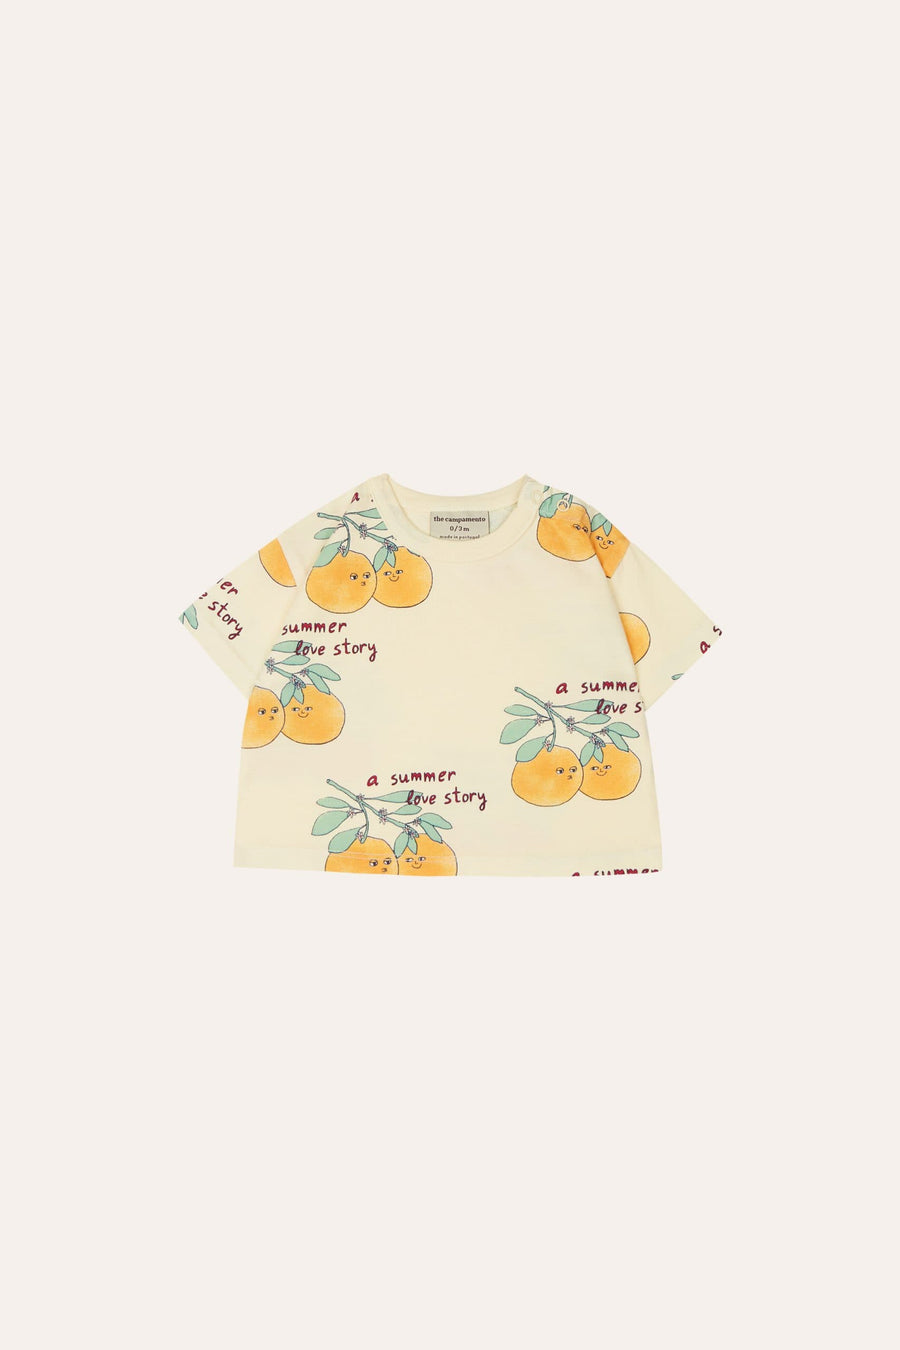 Loving Oranges Baby T-Shirt - Parkette.